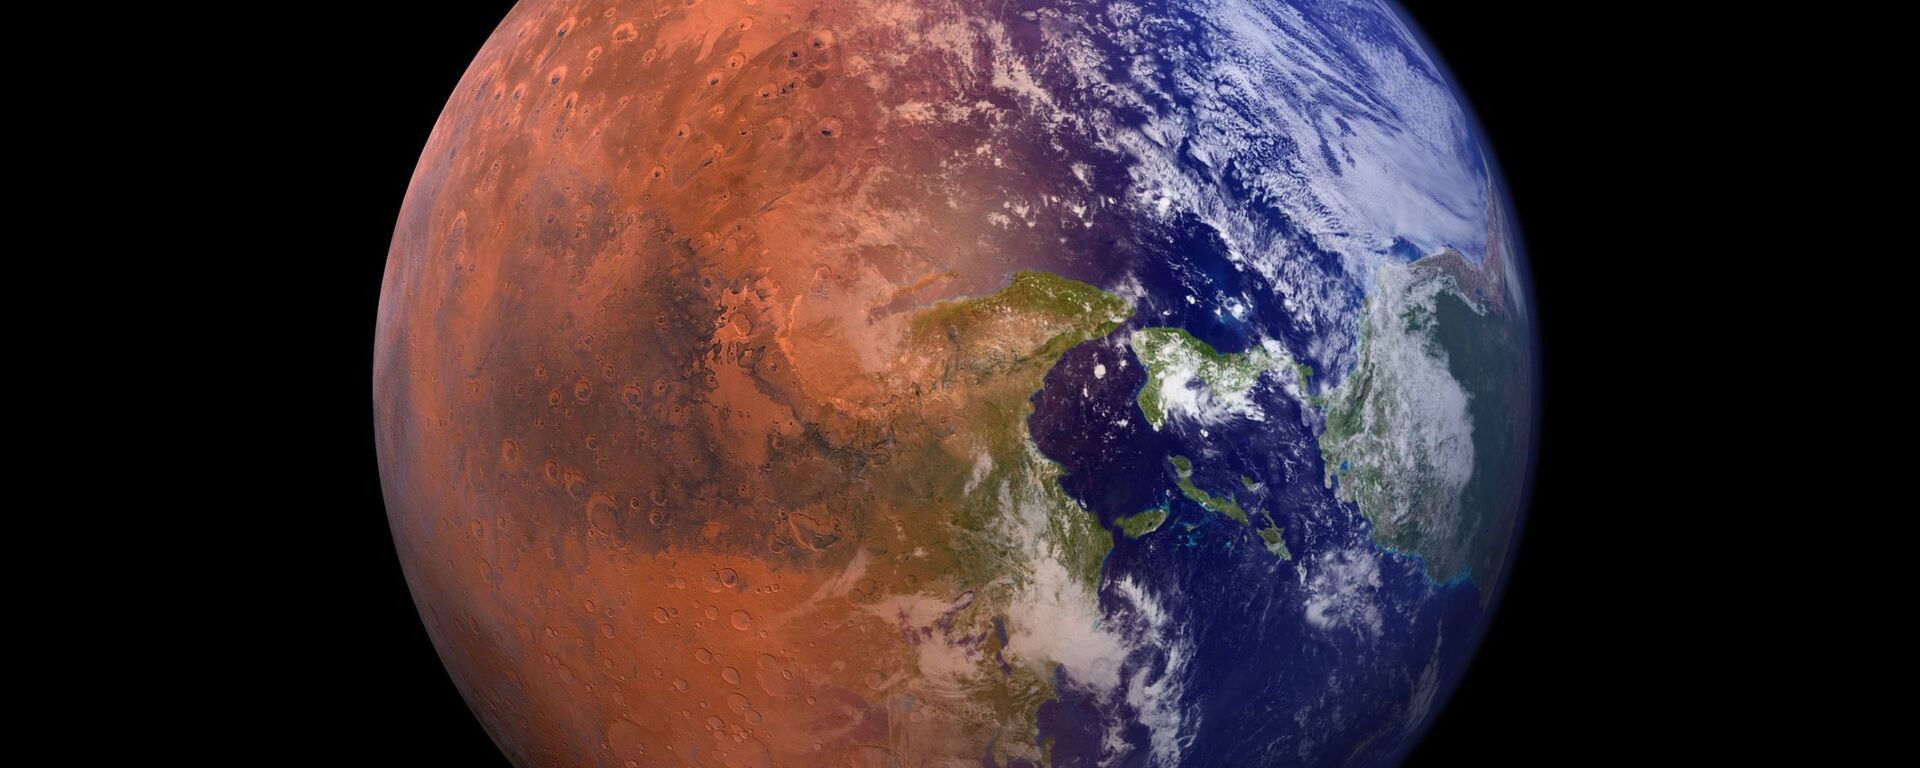 صورة خيالية تجمع كوكب الأرض مع نصف من كوكب المريخ  - سبوتنيك عربي, 1920, 04.01.2022